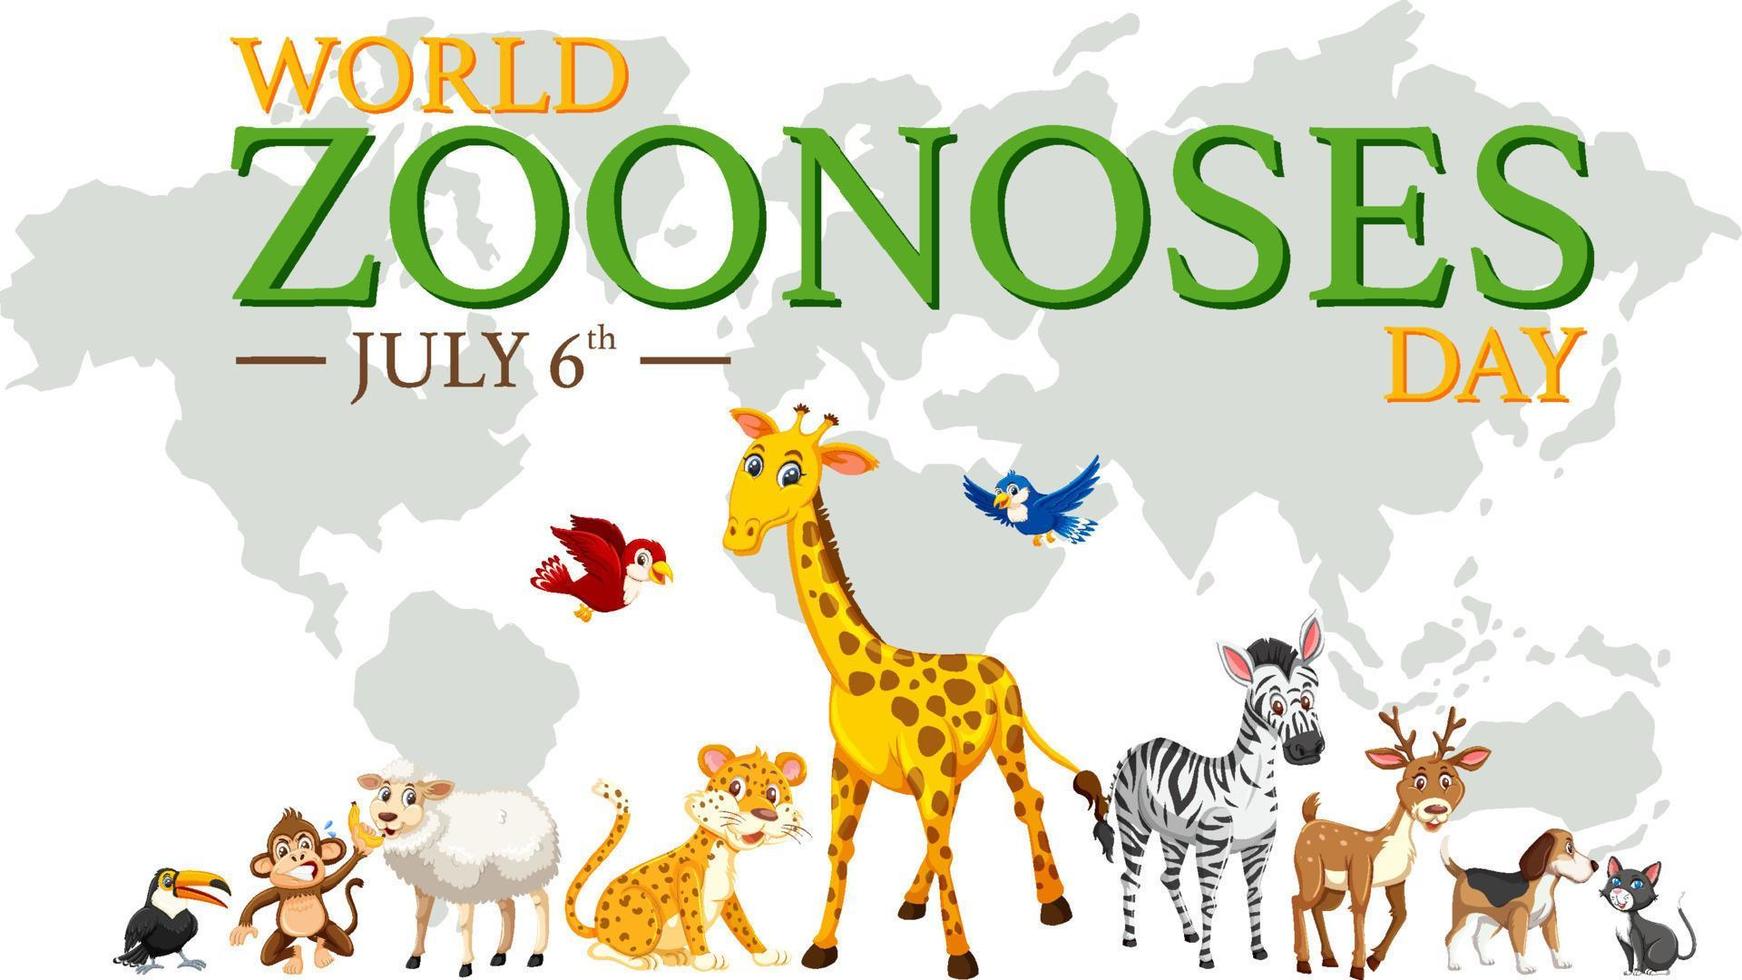 världens zoonoser dag affischdesign vektor